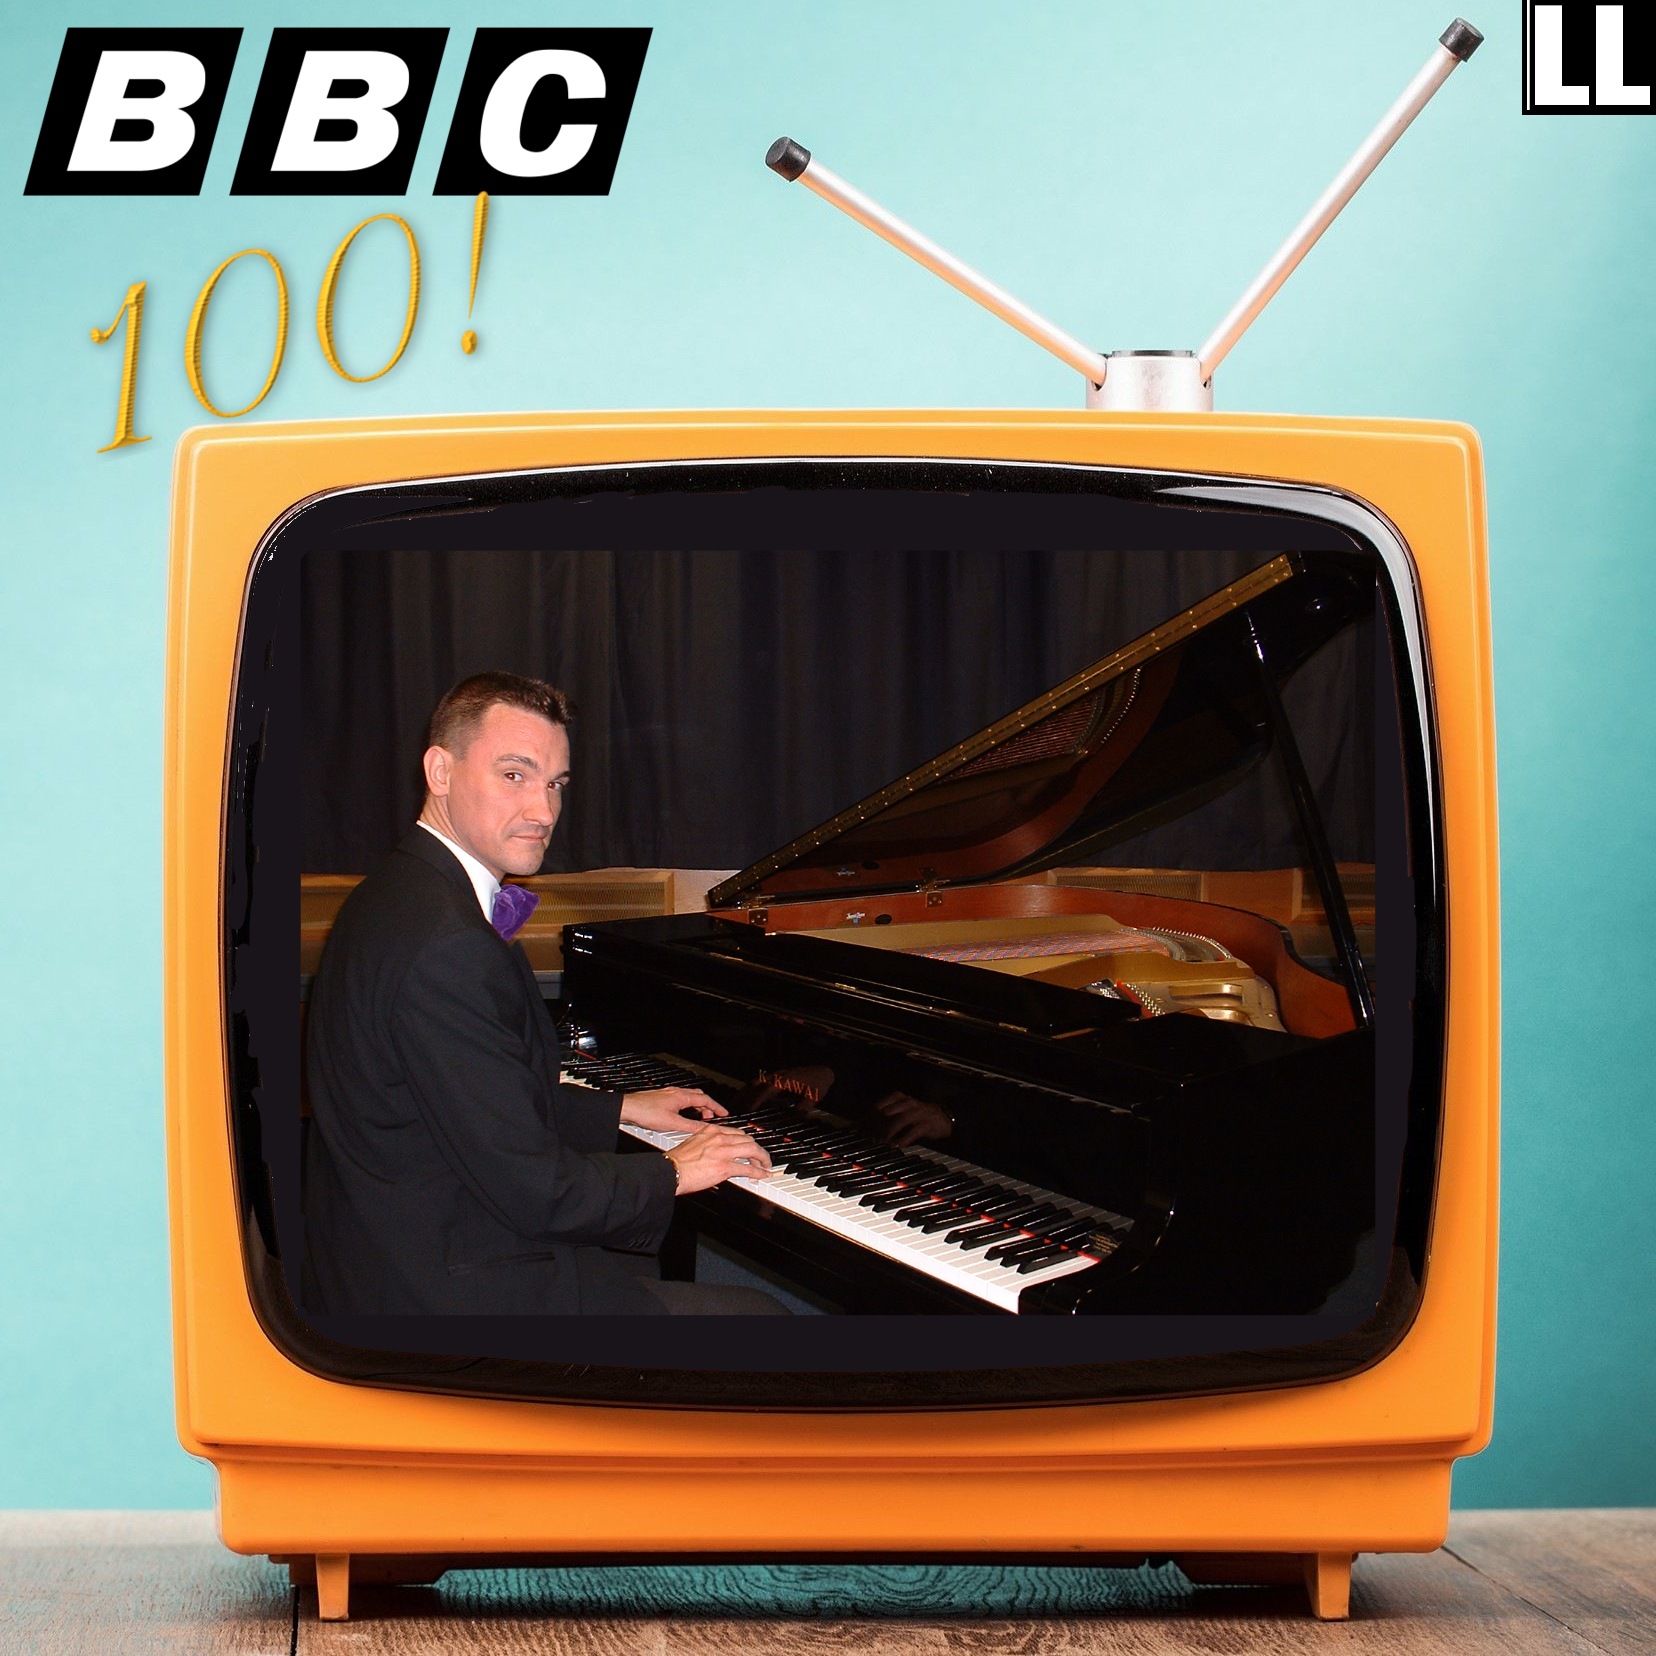 image of BBC 100 album cover